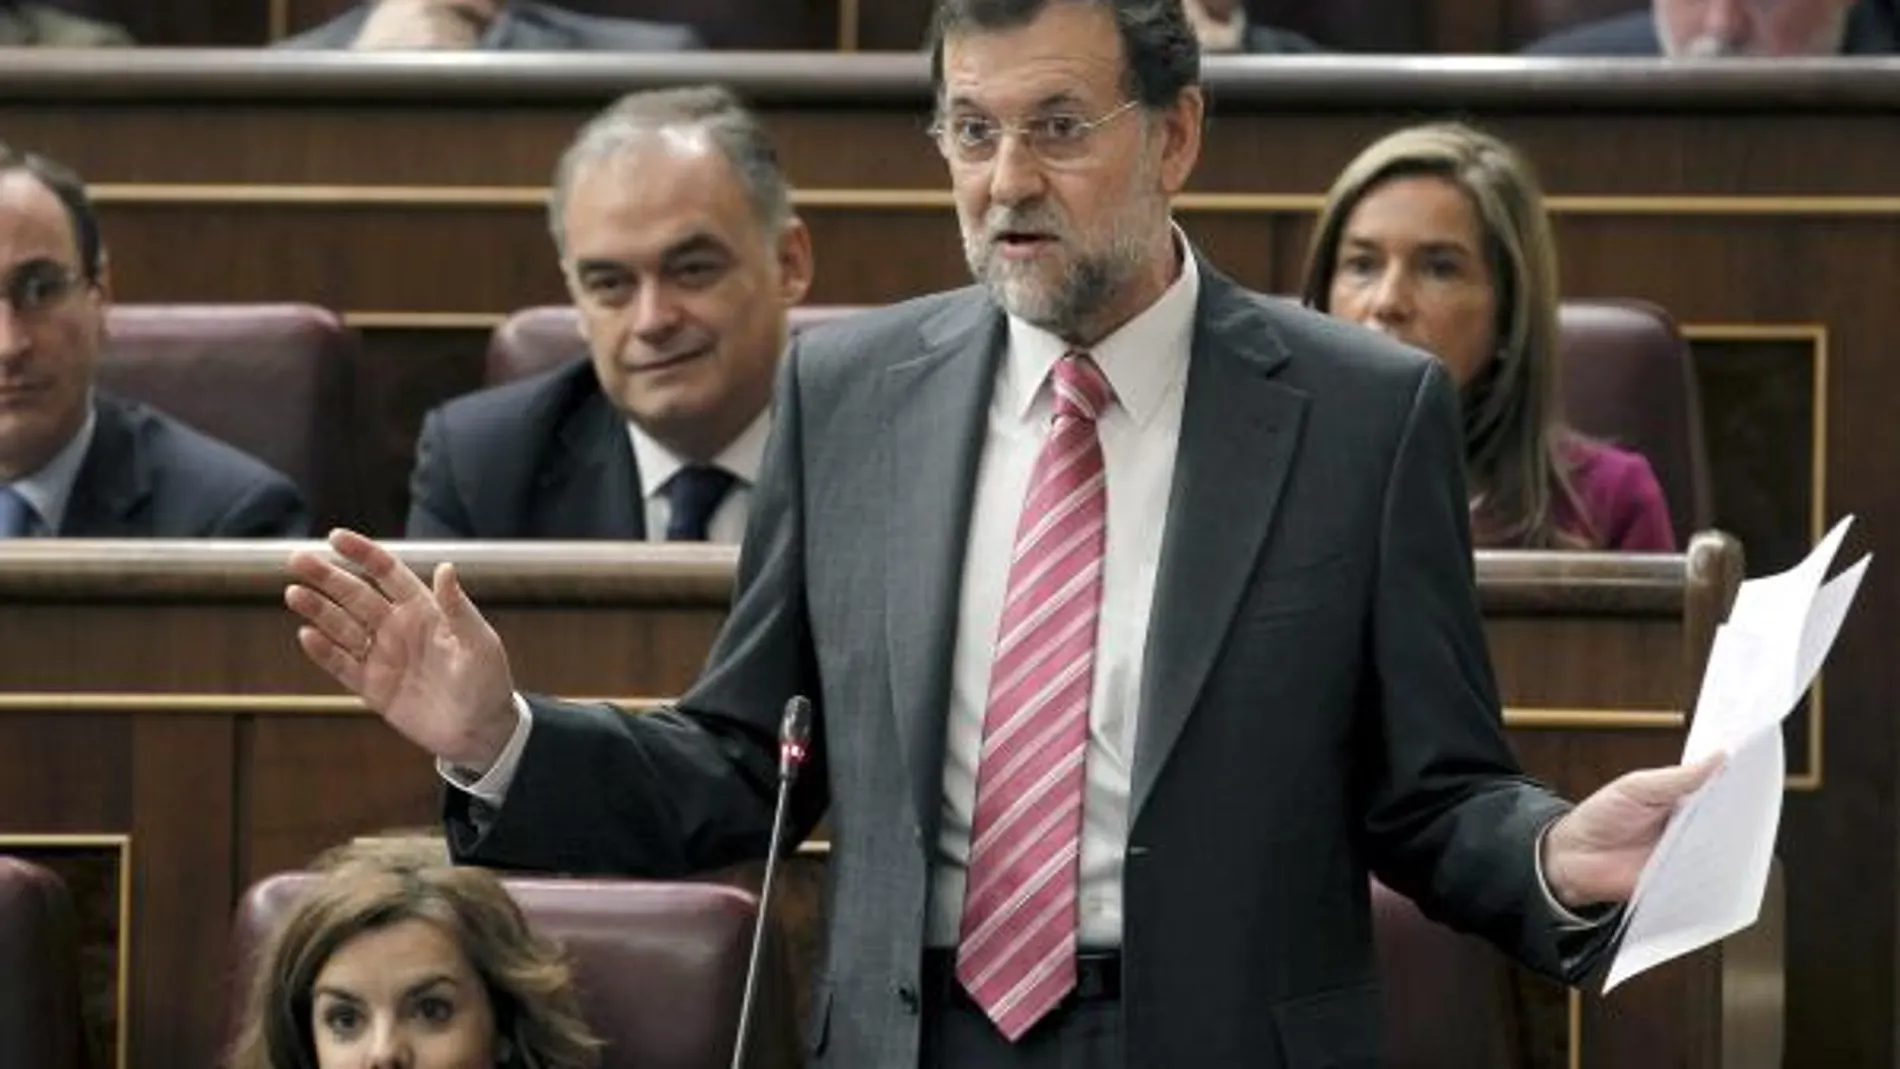 Rajoy llevará al Tribunal de Cuentas irregularidades en los ERE